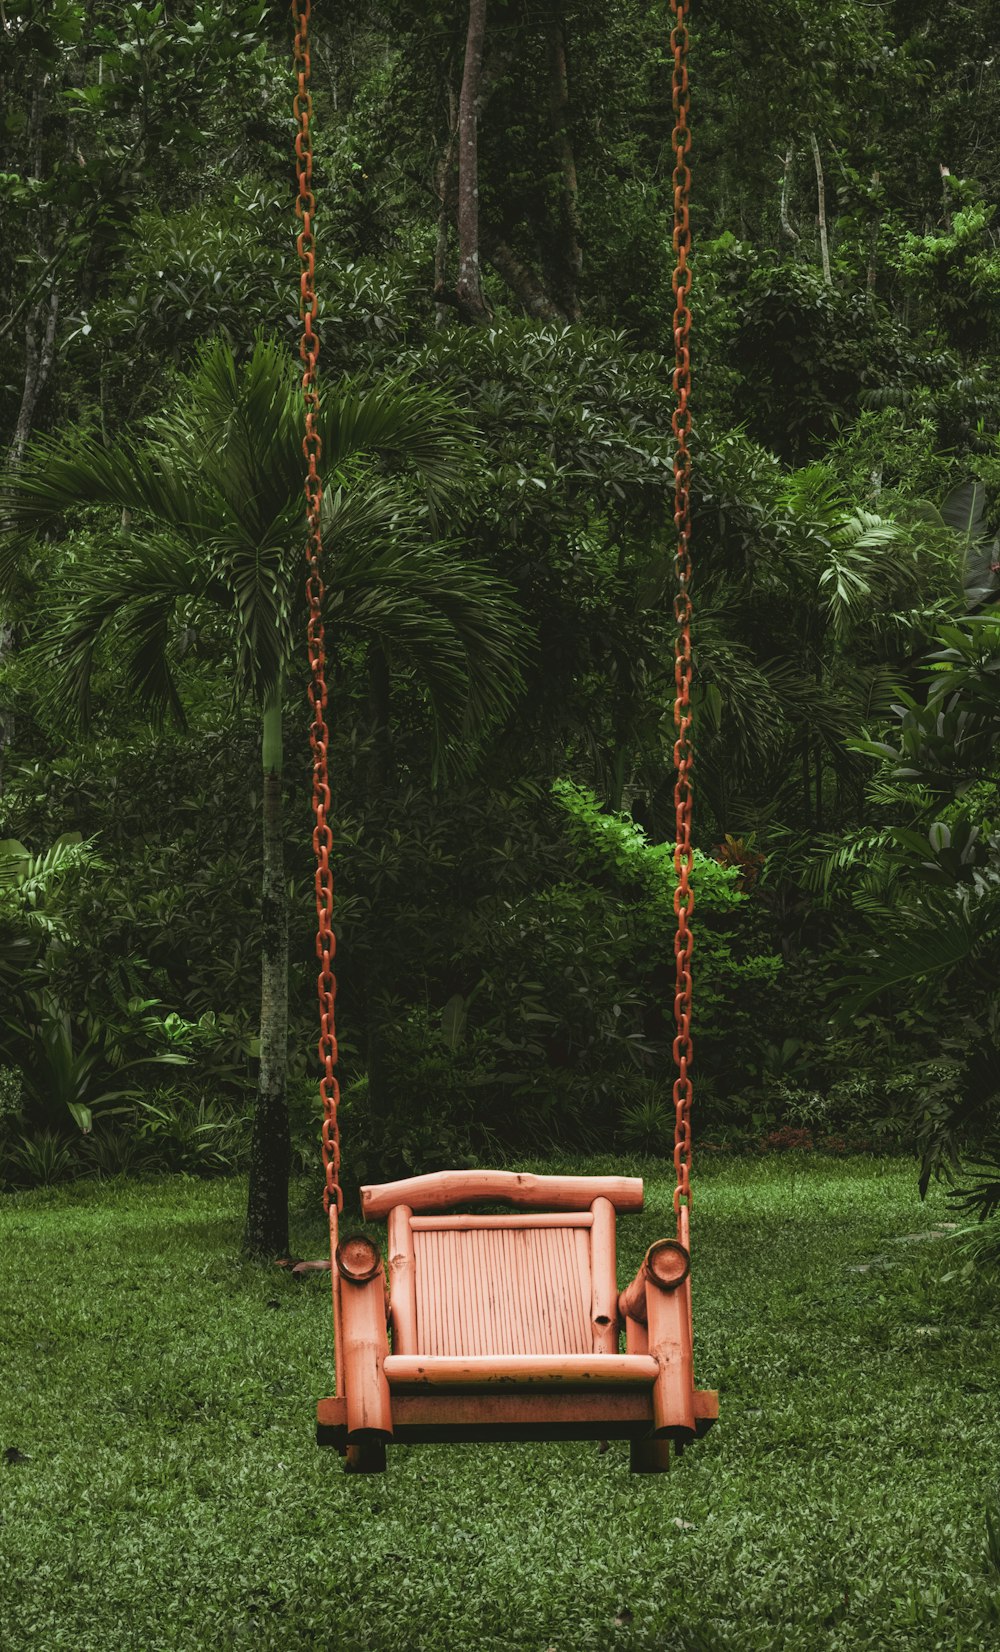 a wooden swing in a yard